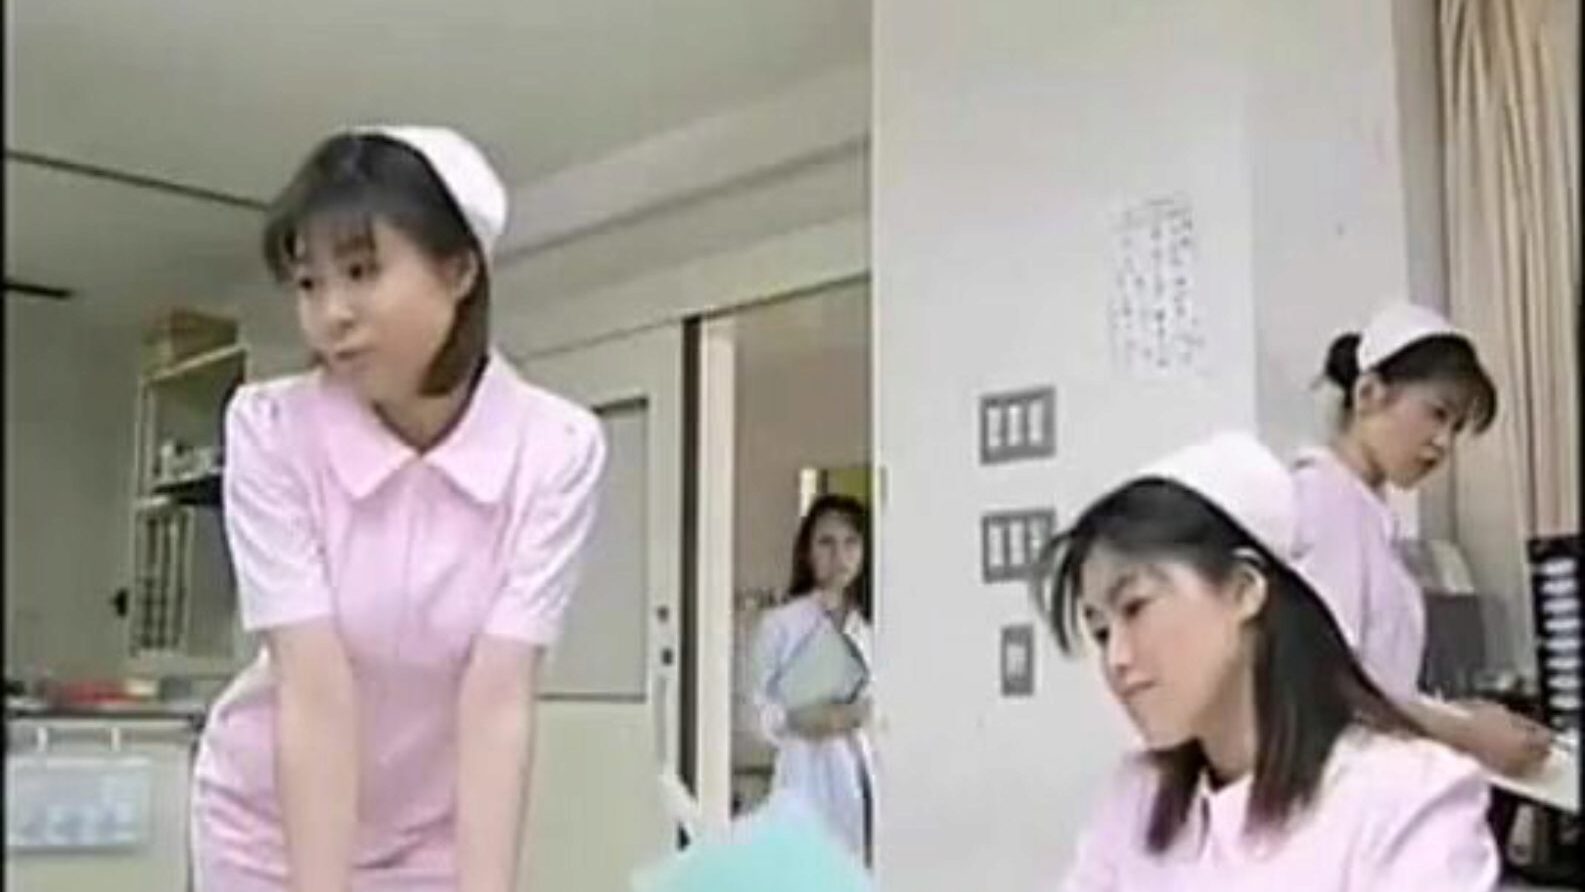 Nurse Sex Therapy (Japanese)